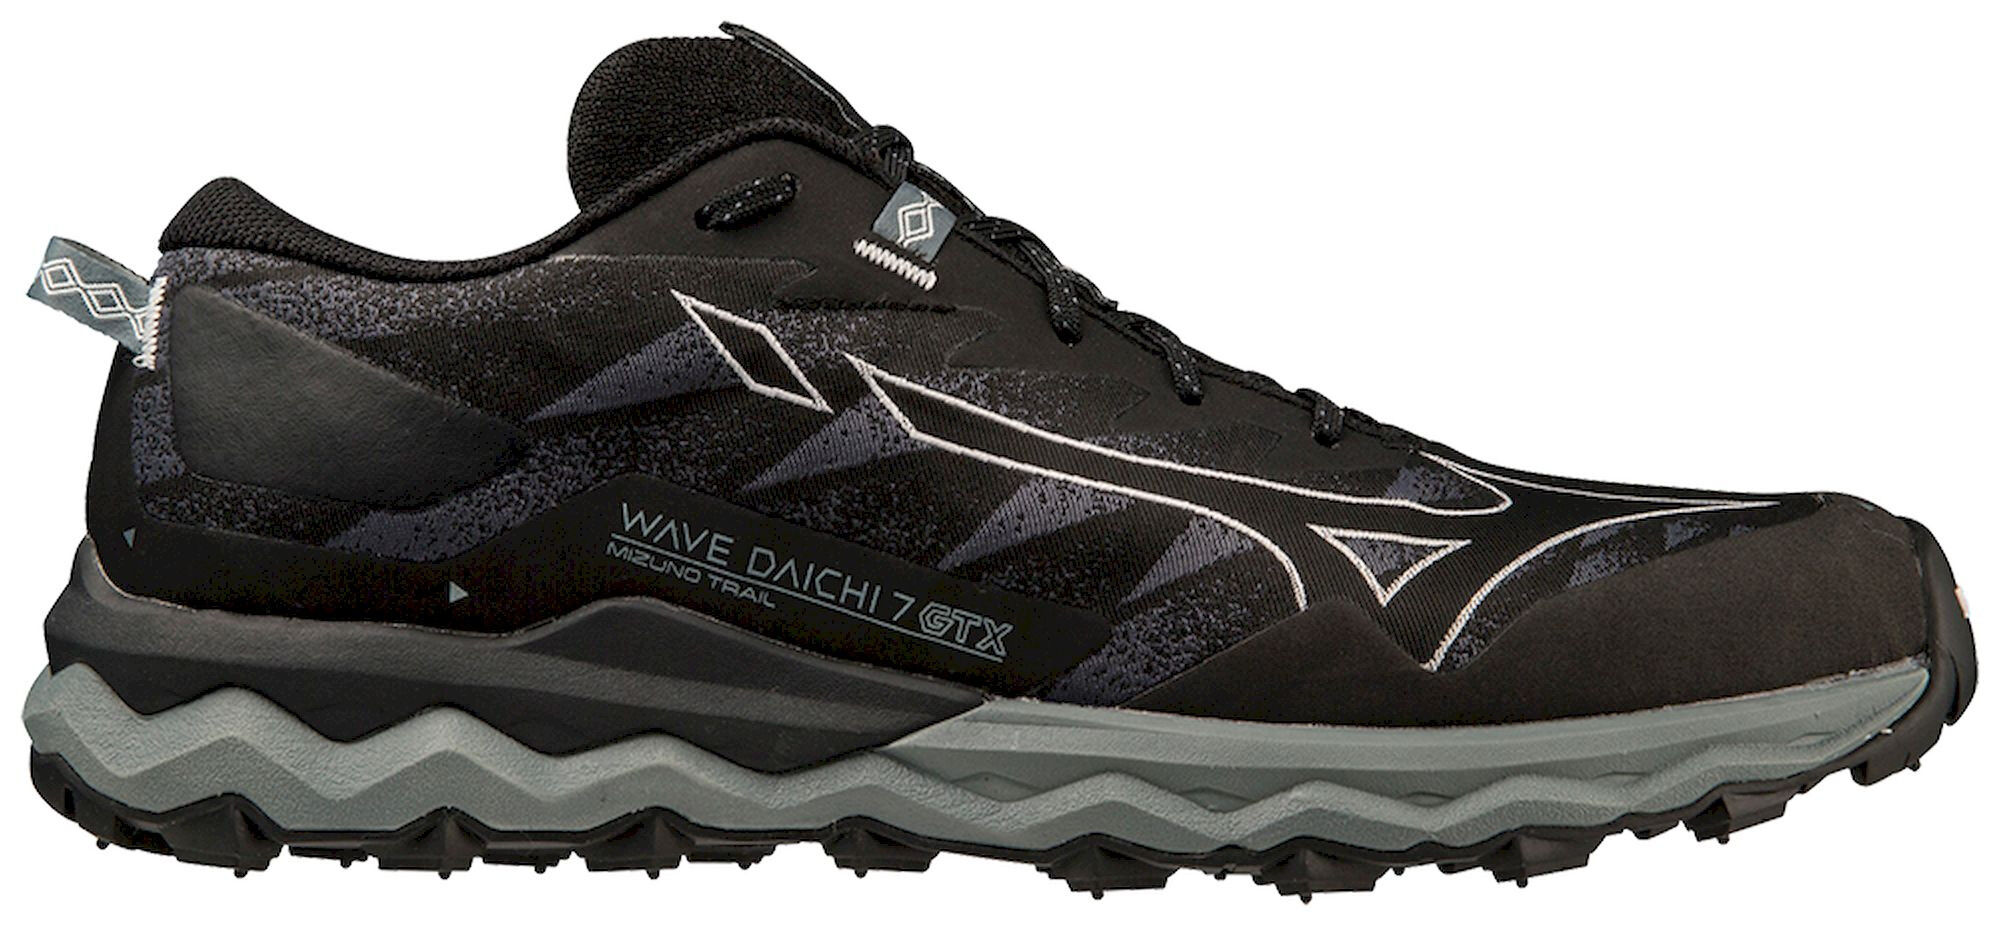 Mizuno Wave Daichi 7 GTX - Trail running shoes - Men's